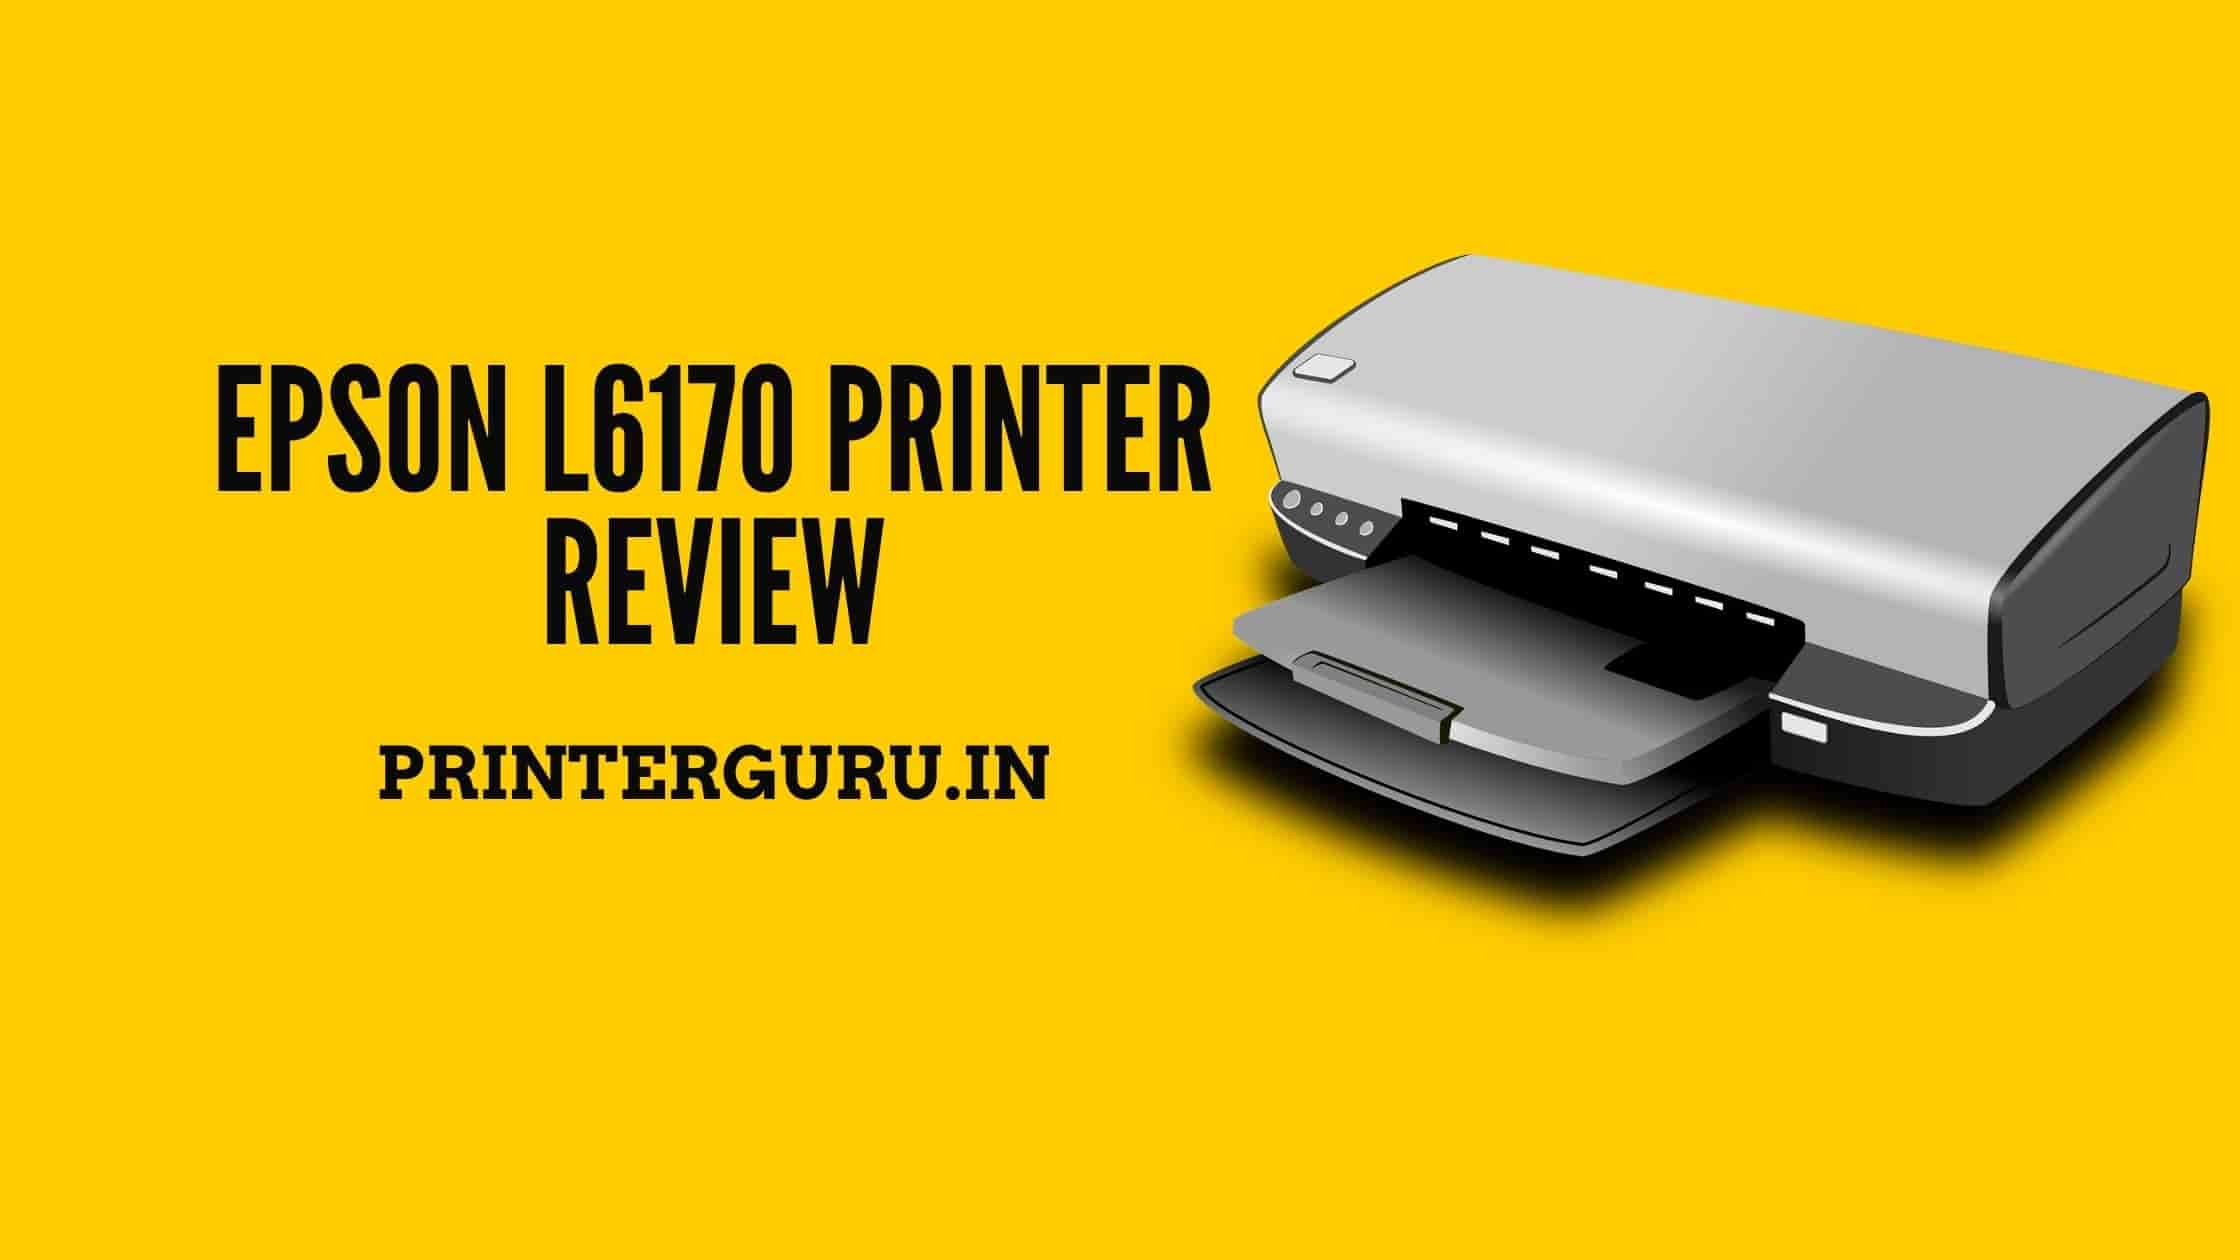 Epson L6170 Printer Review